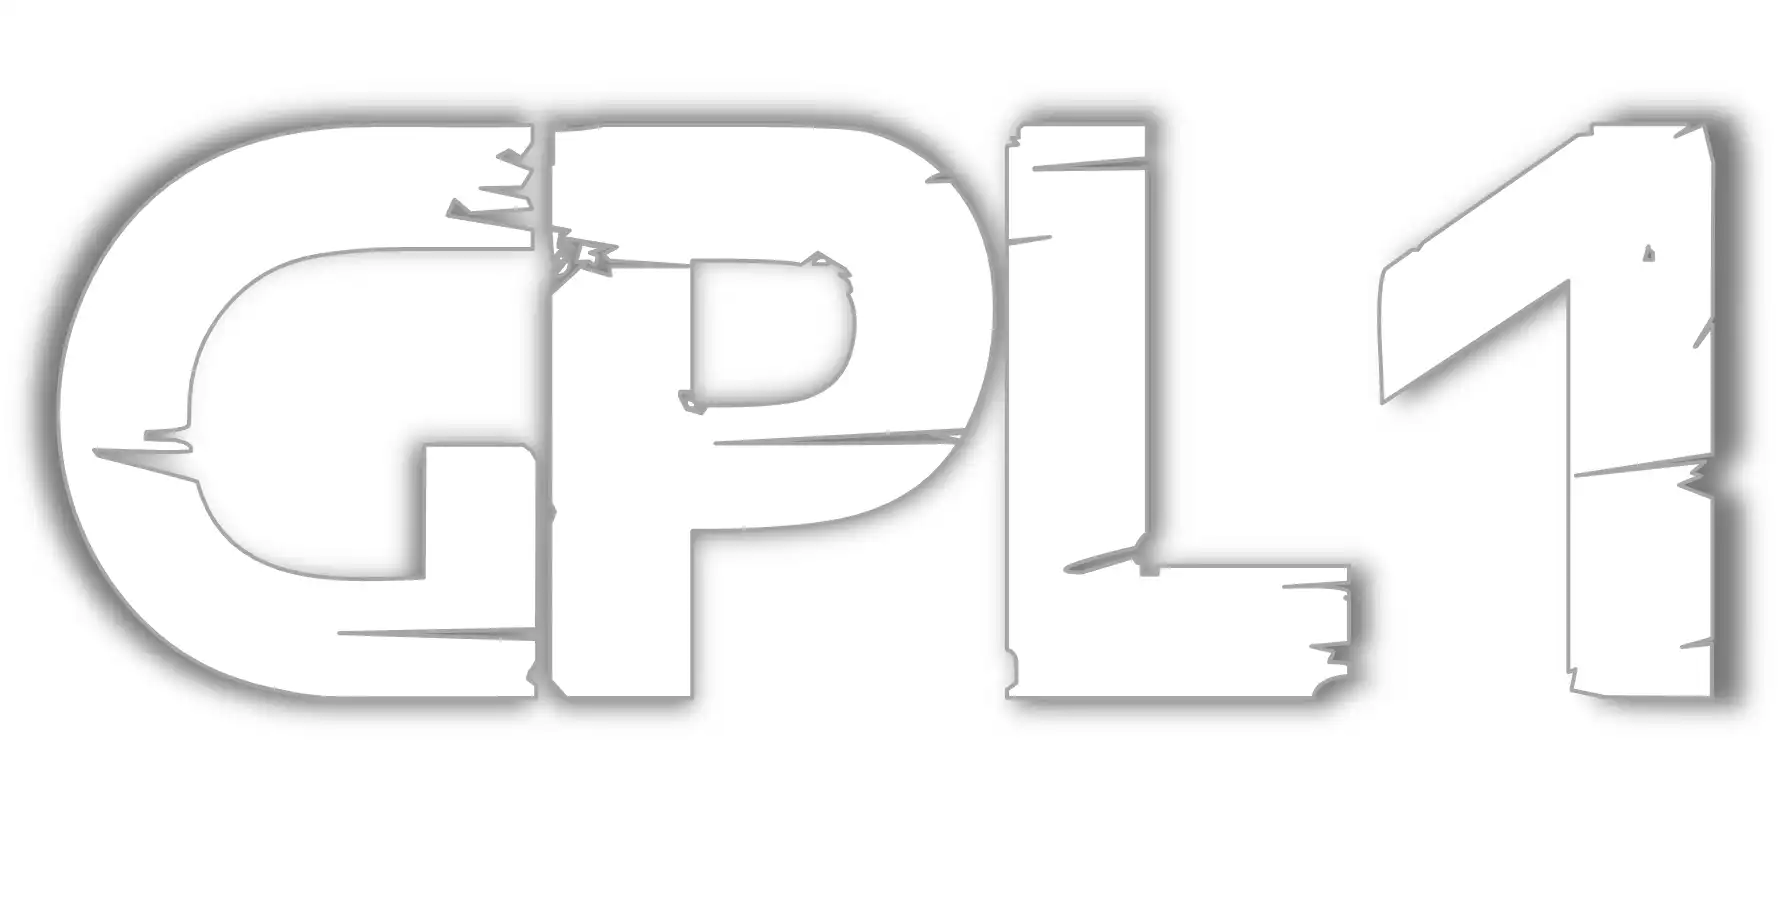 ابزار وب یا برنامه وب GPL را دانلود کنید